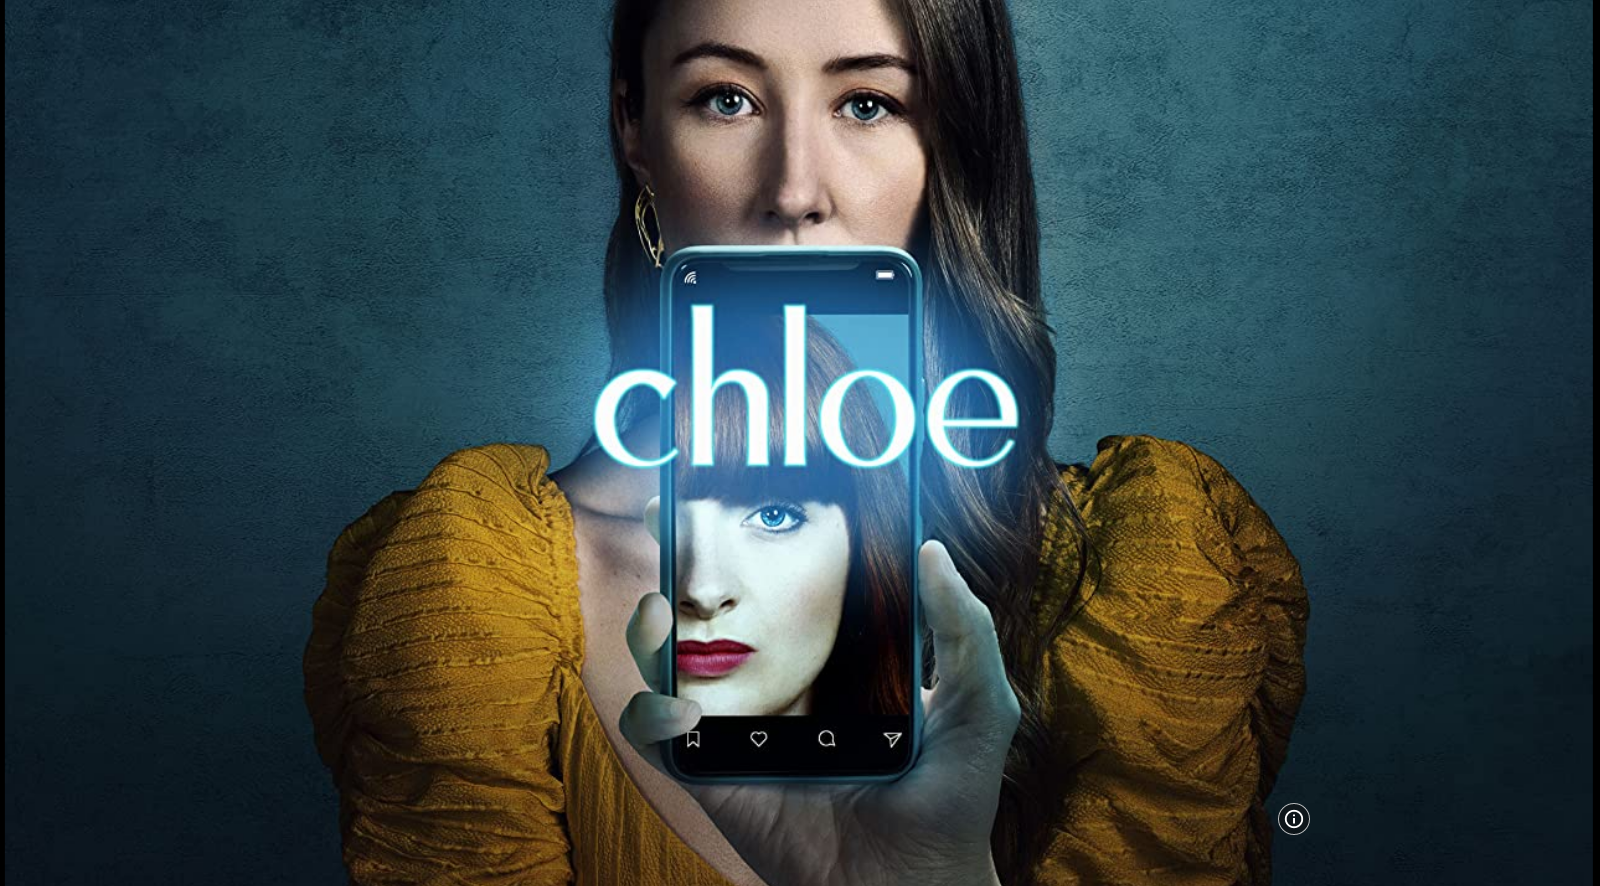 Chloe S01E04 HLG 2160p WEB H265